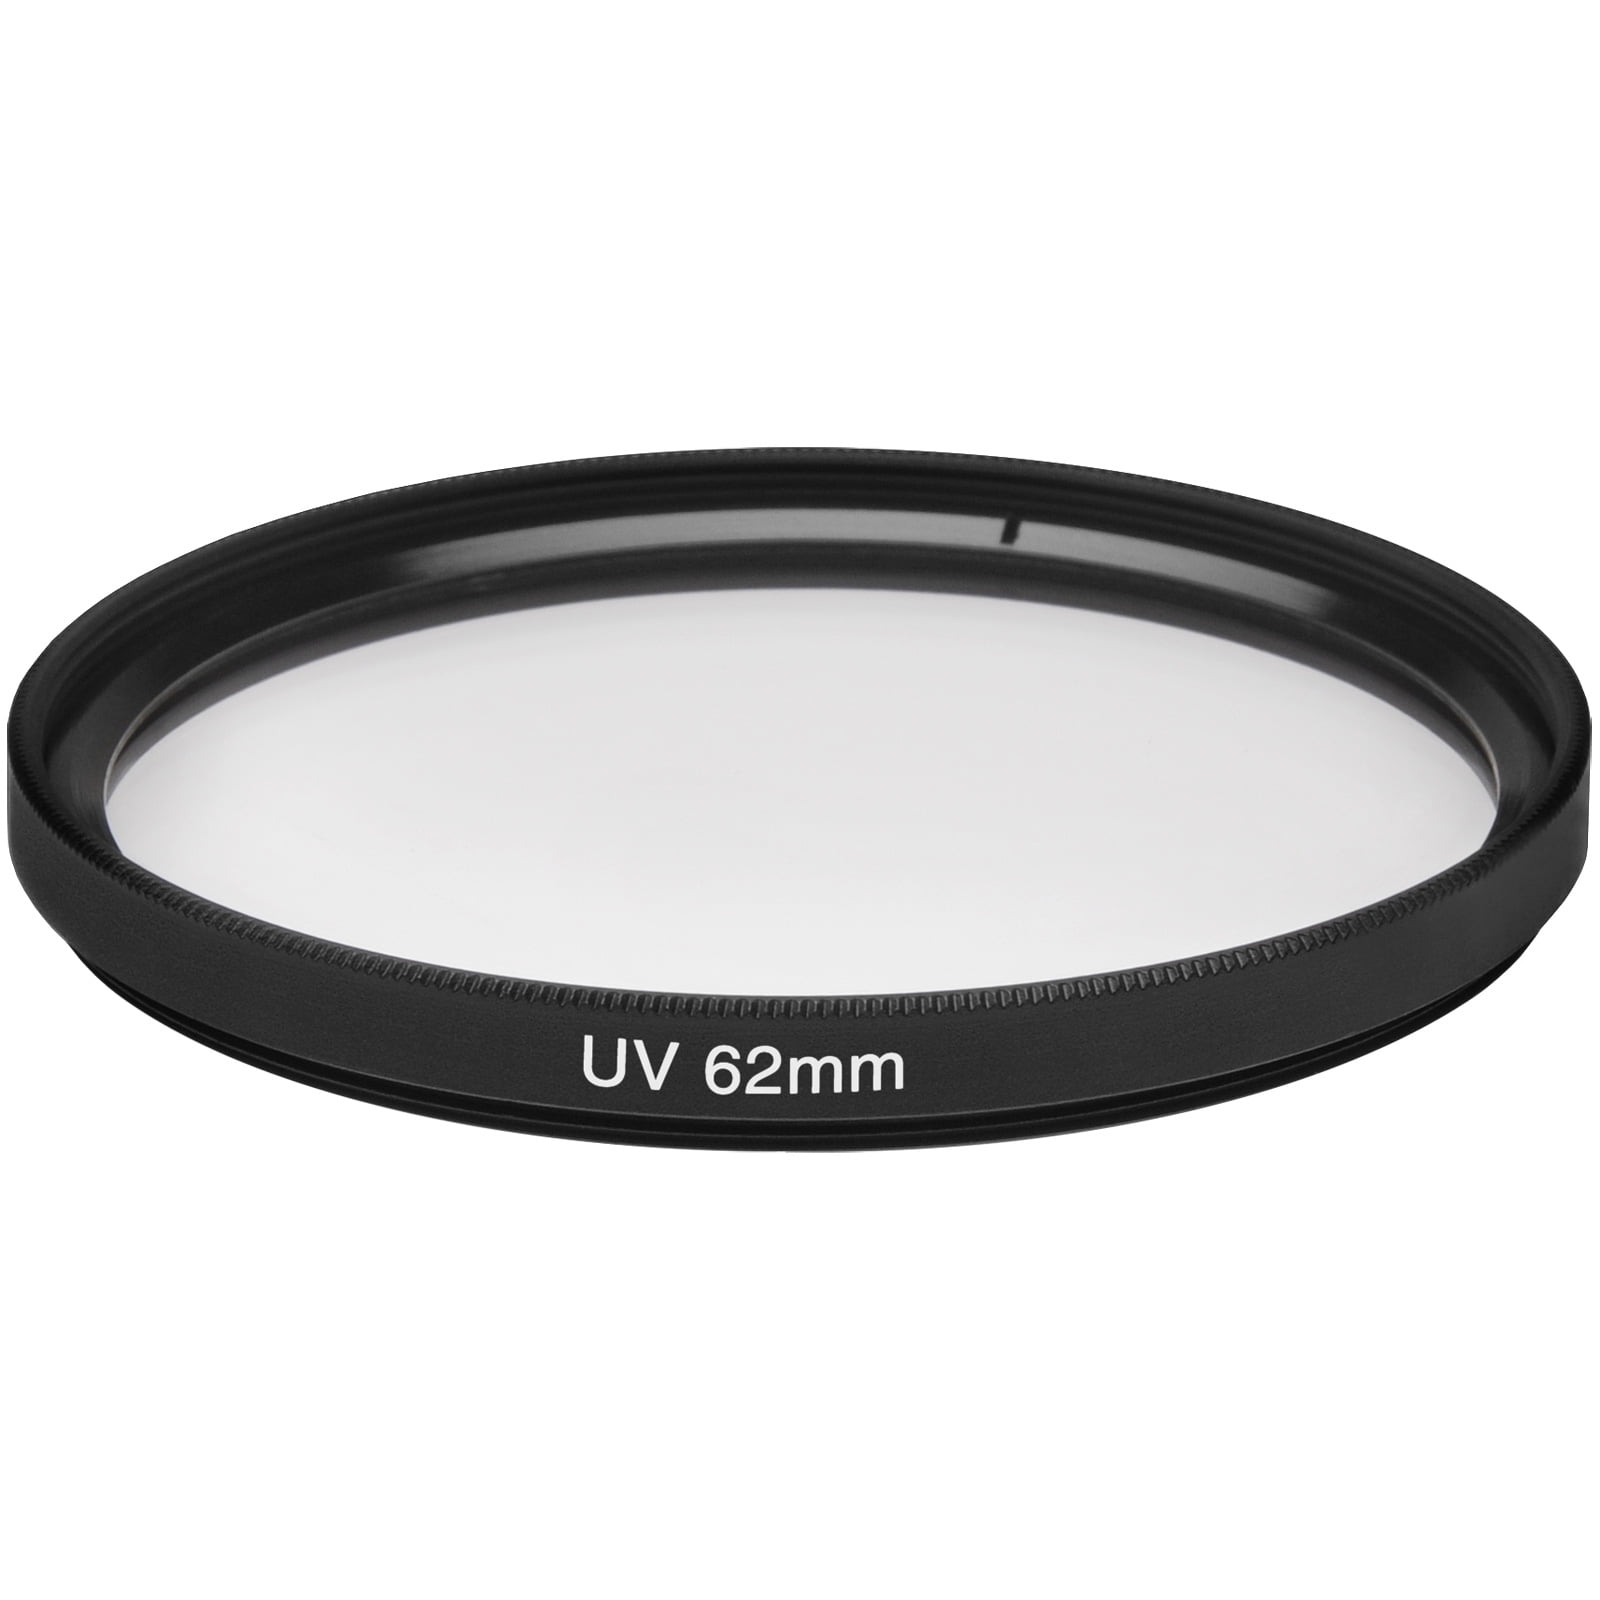 I3ePro 58mm UV Filter for Canon EF 85mm f/1.8 USM Lens